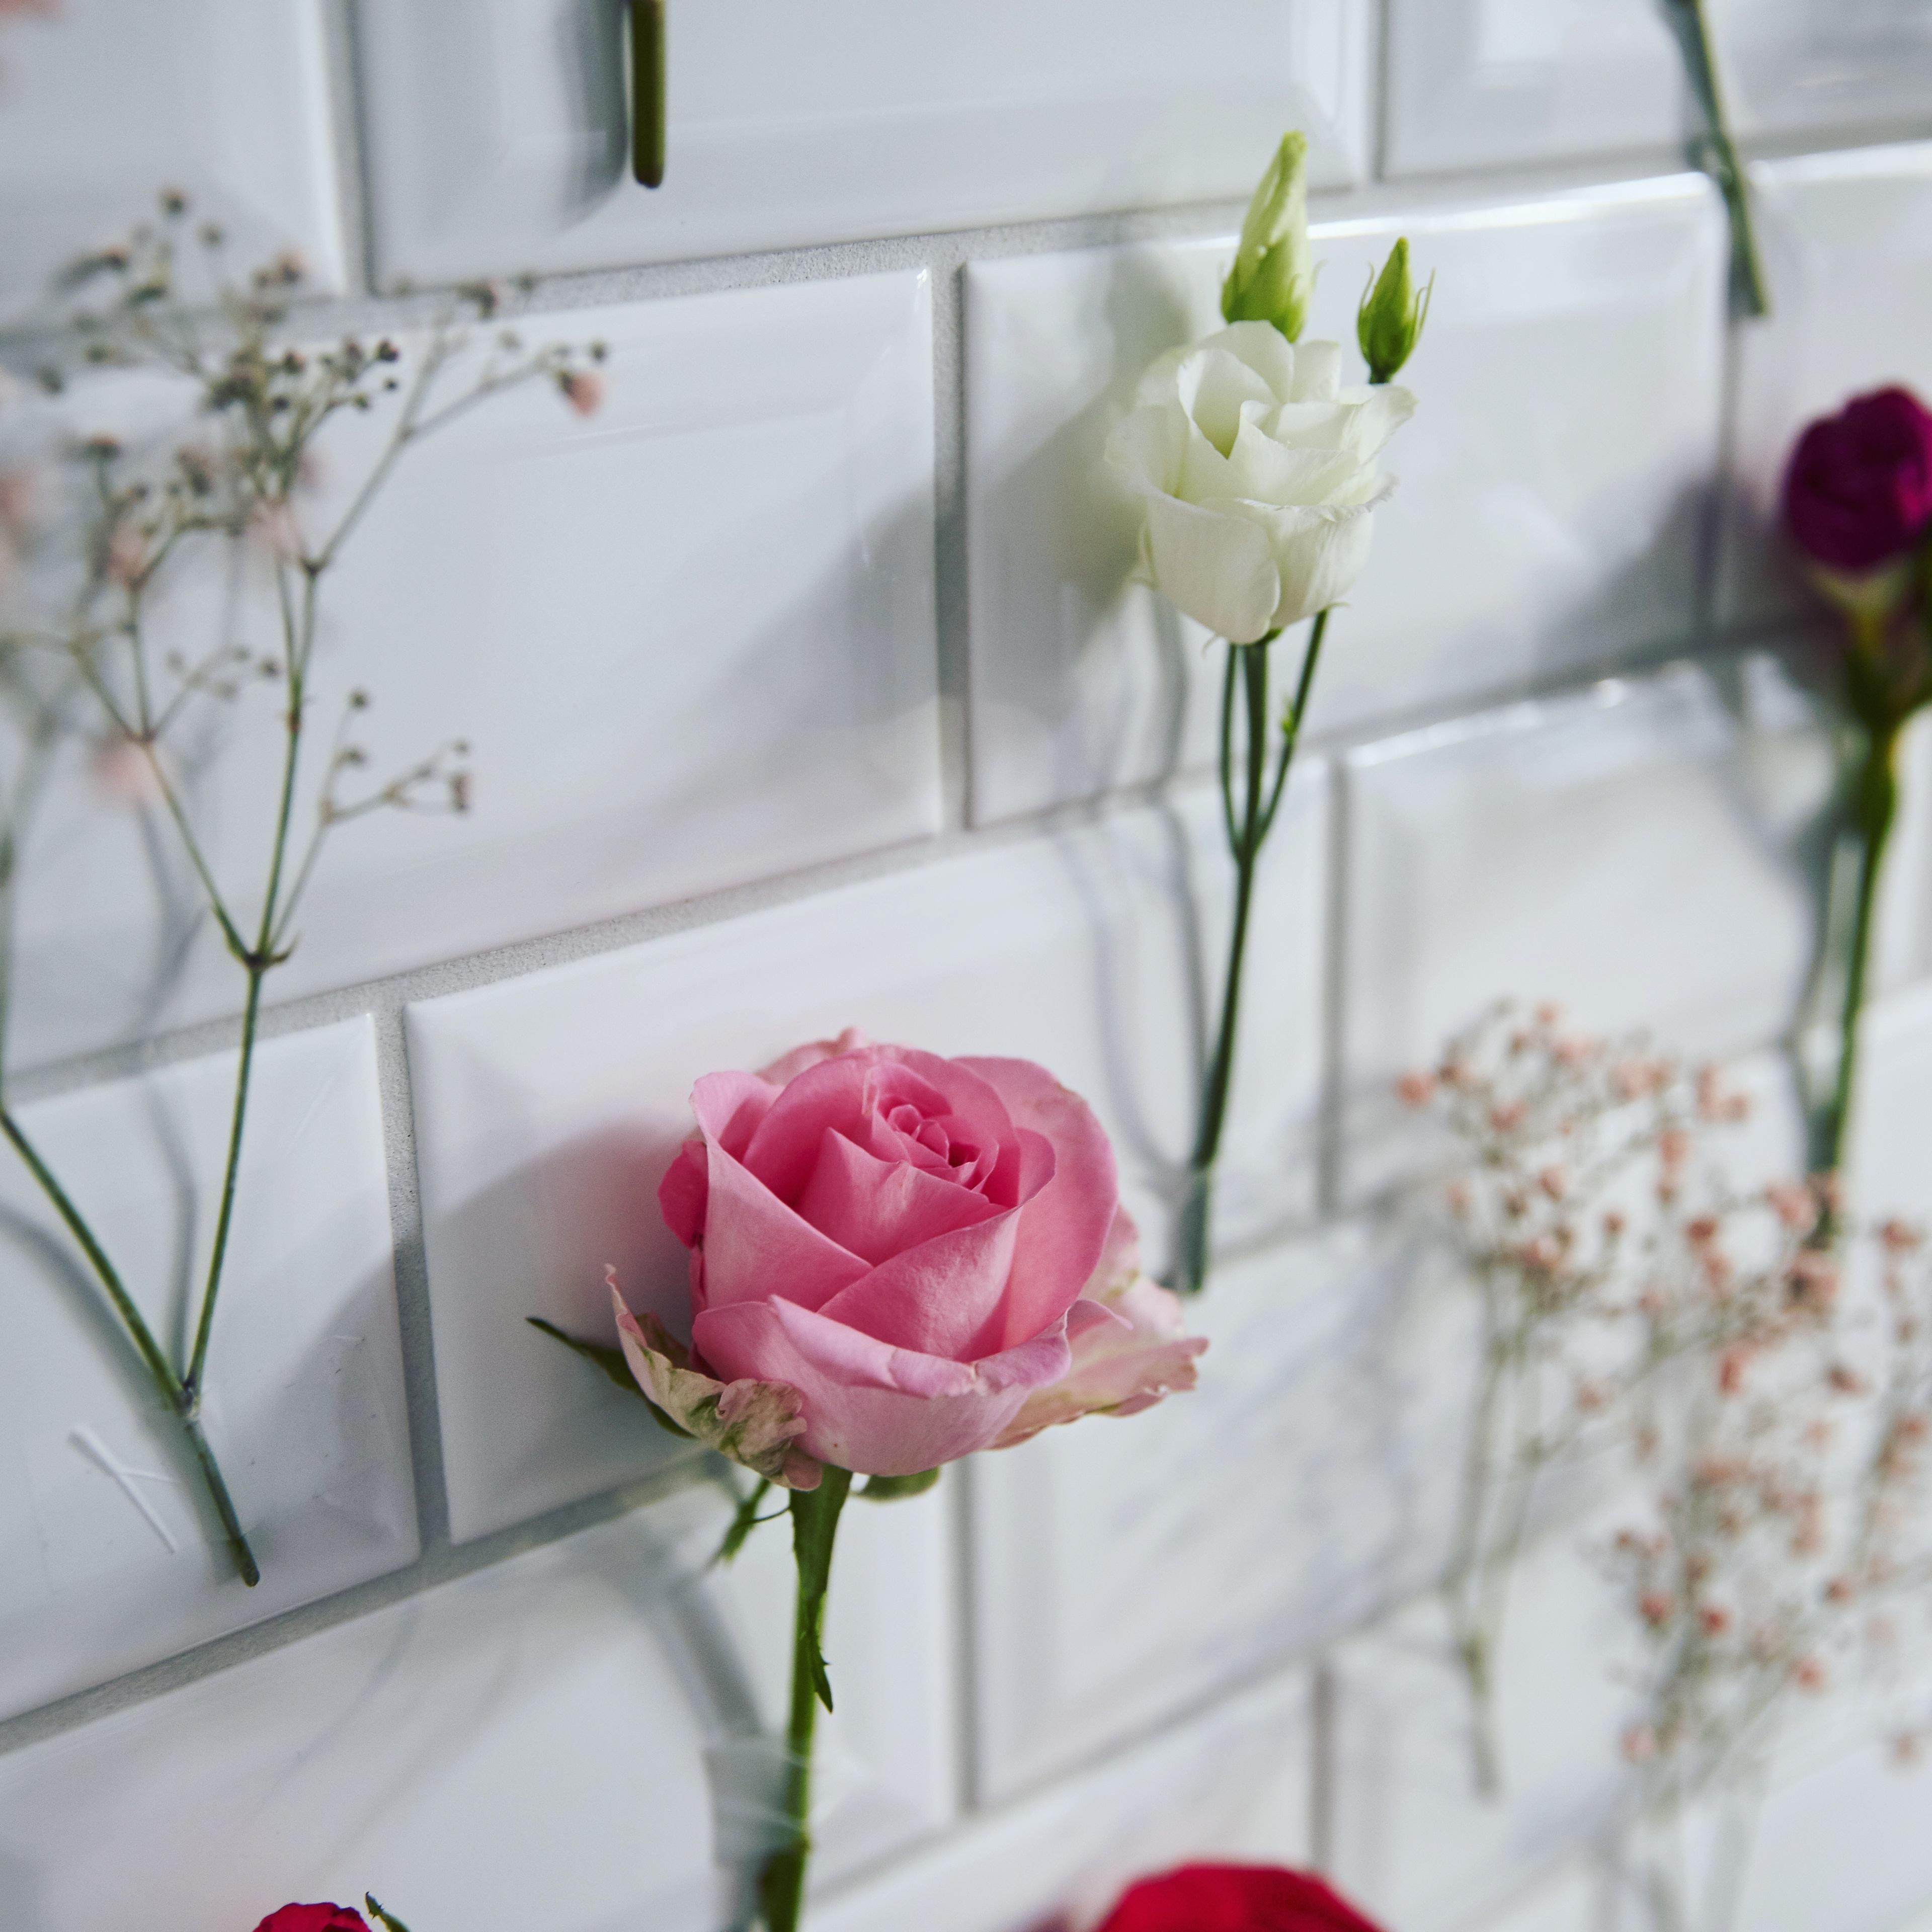 In love with flowers 💕 #blumen #rosen #blumenwand #deko #metrofliesen #küche #diy #altbau